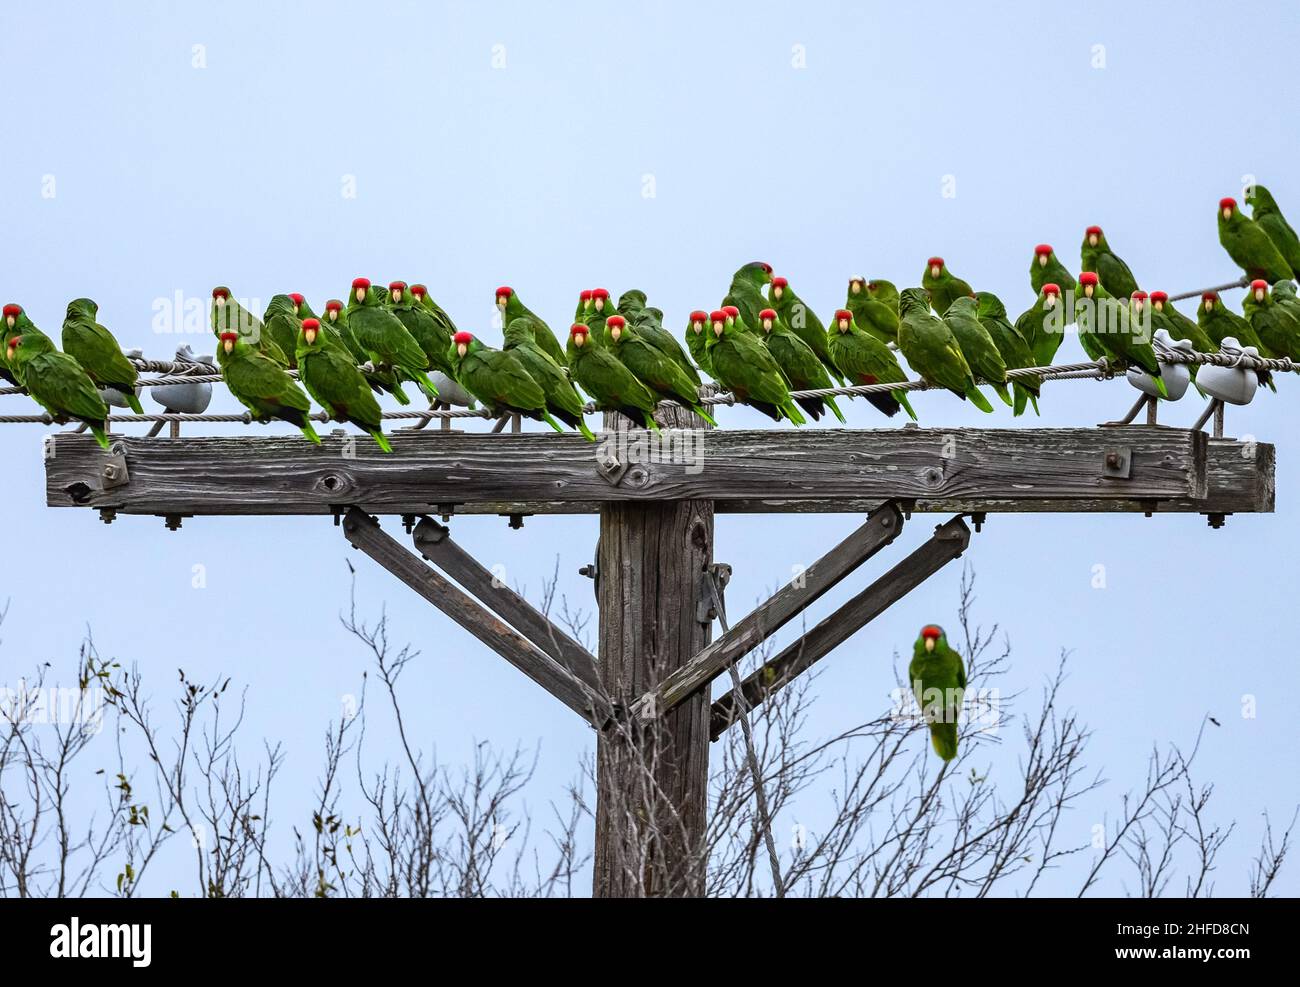 Troupeau de perroquets à couronne rouge (Amazona viridigenalis) installés en zone urbaine.McAllen, Texas, États-Unis. Banque D'Images